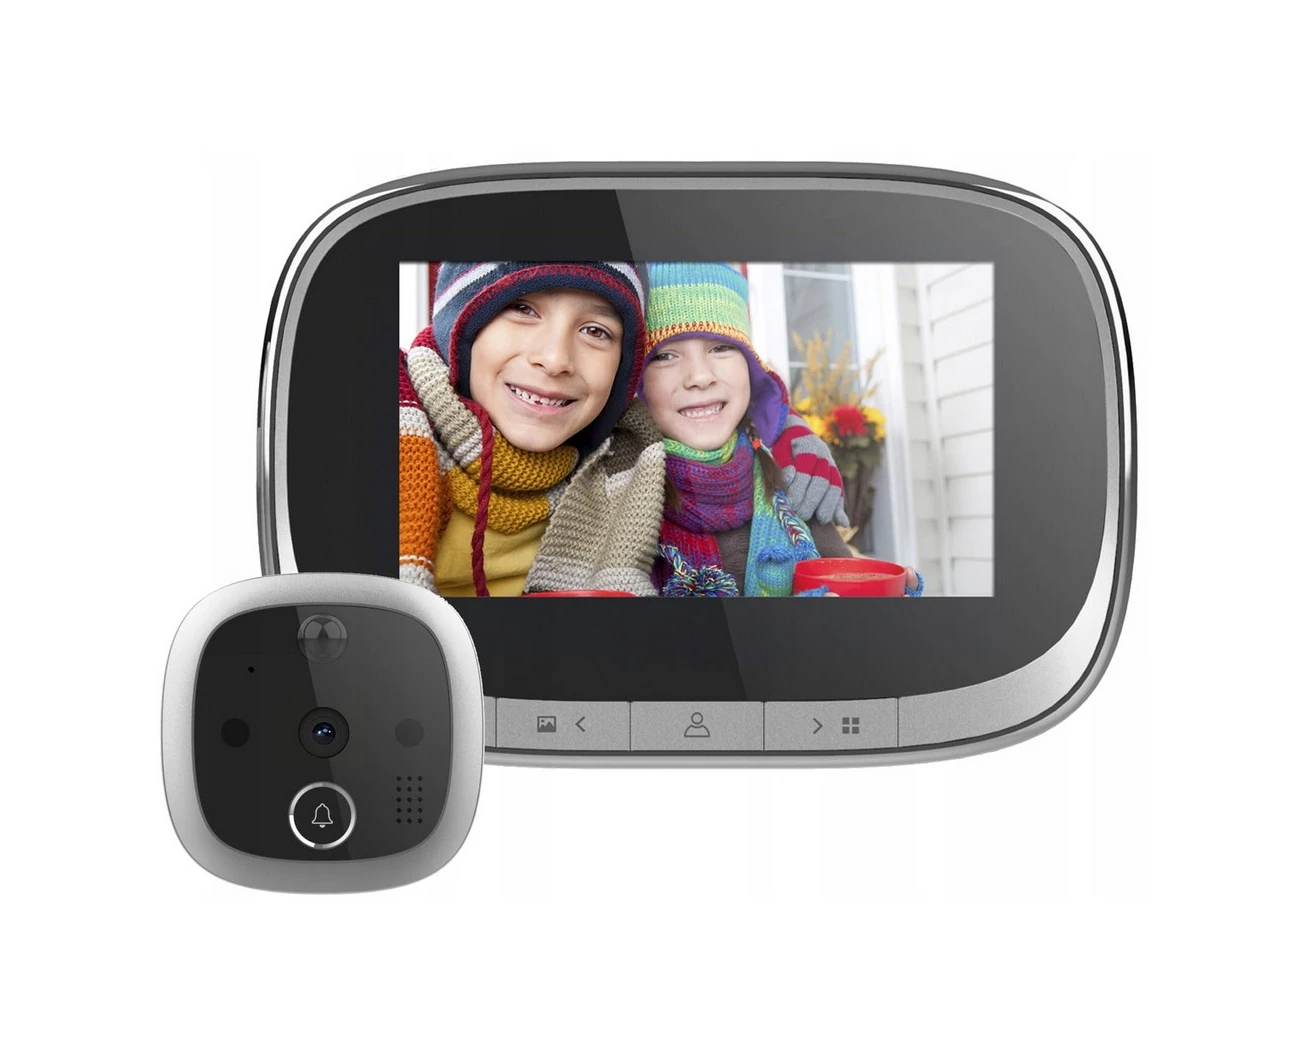 Глазок с экраном. Дверной глазок с экраном. Tuya 5g+2.4g Wi-Fi видео глазок. Вспомогательный монитор с глазком для контроля фокусировки.